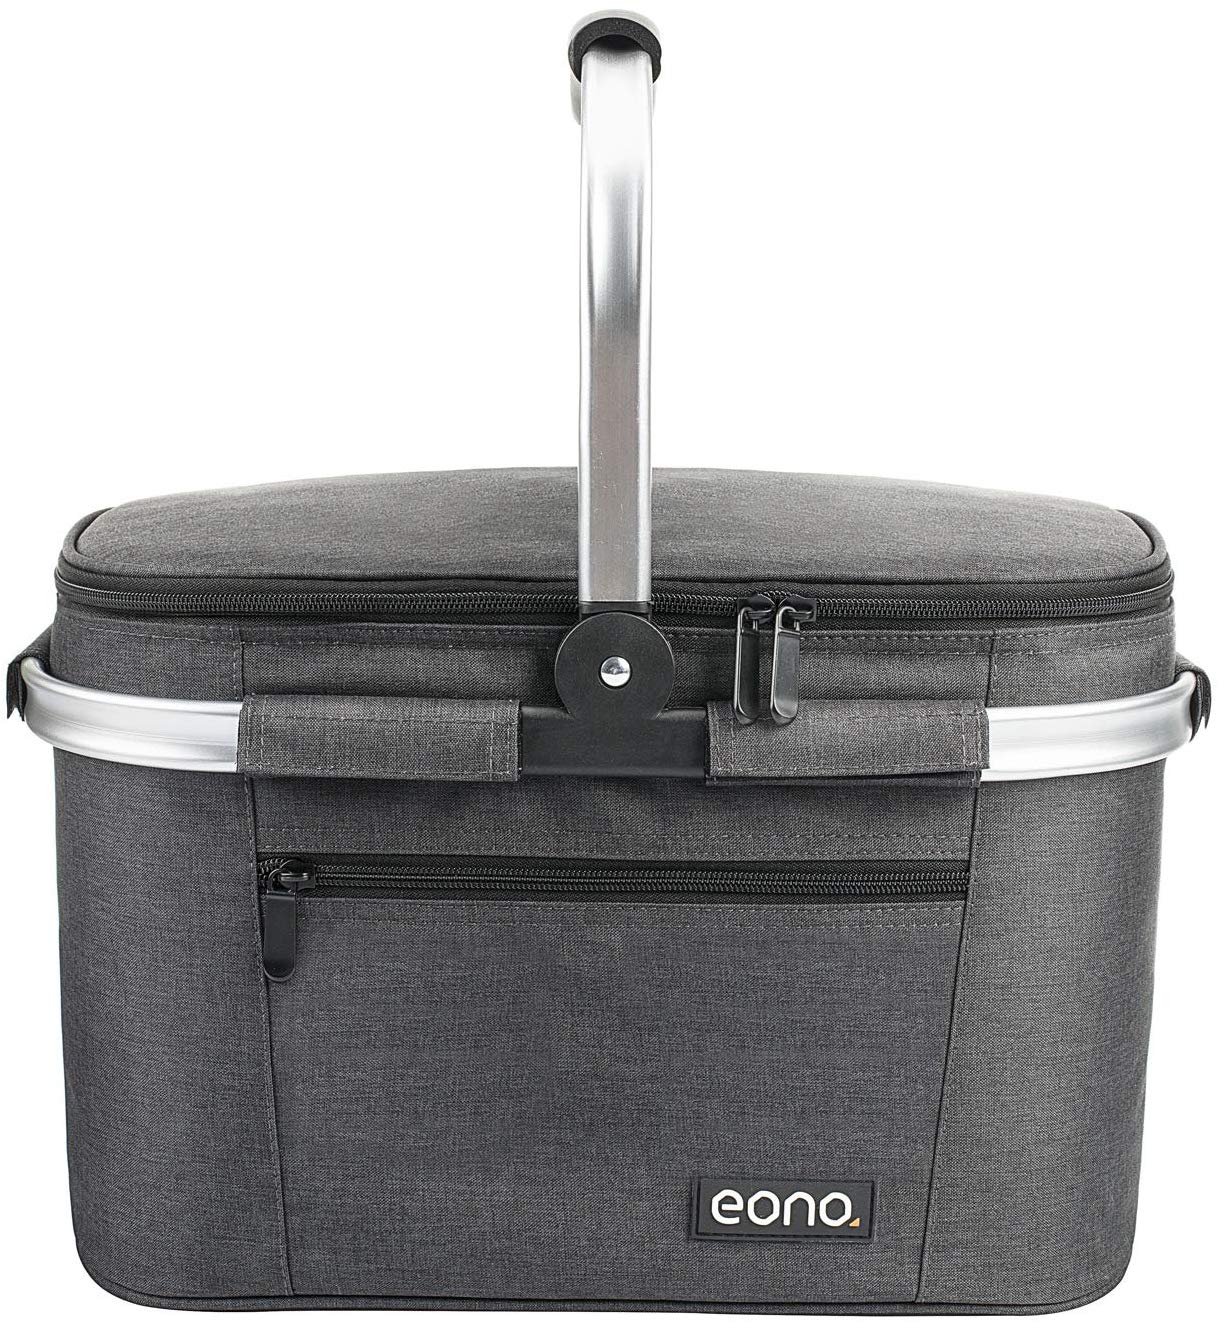 Picnic Basket Insulated Basket Cooler Bag for Outdoor